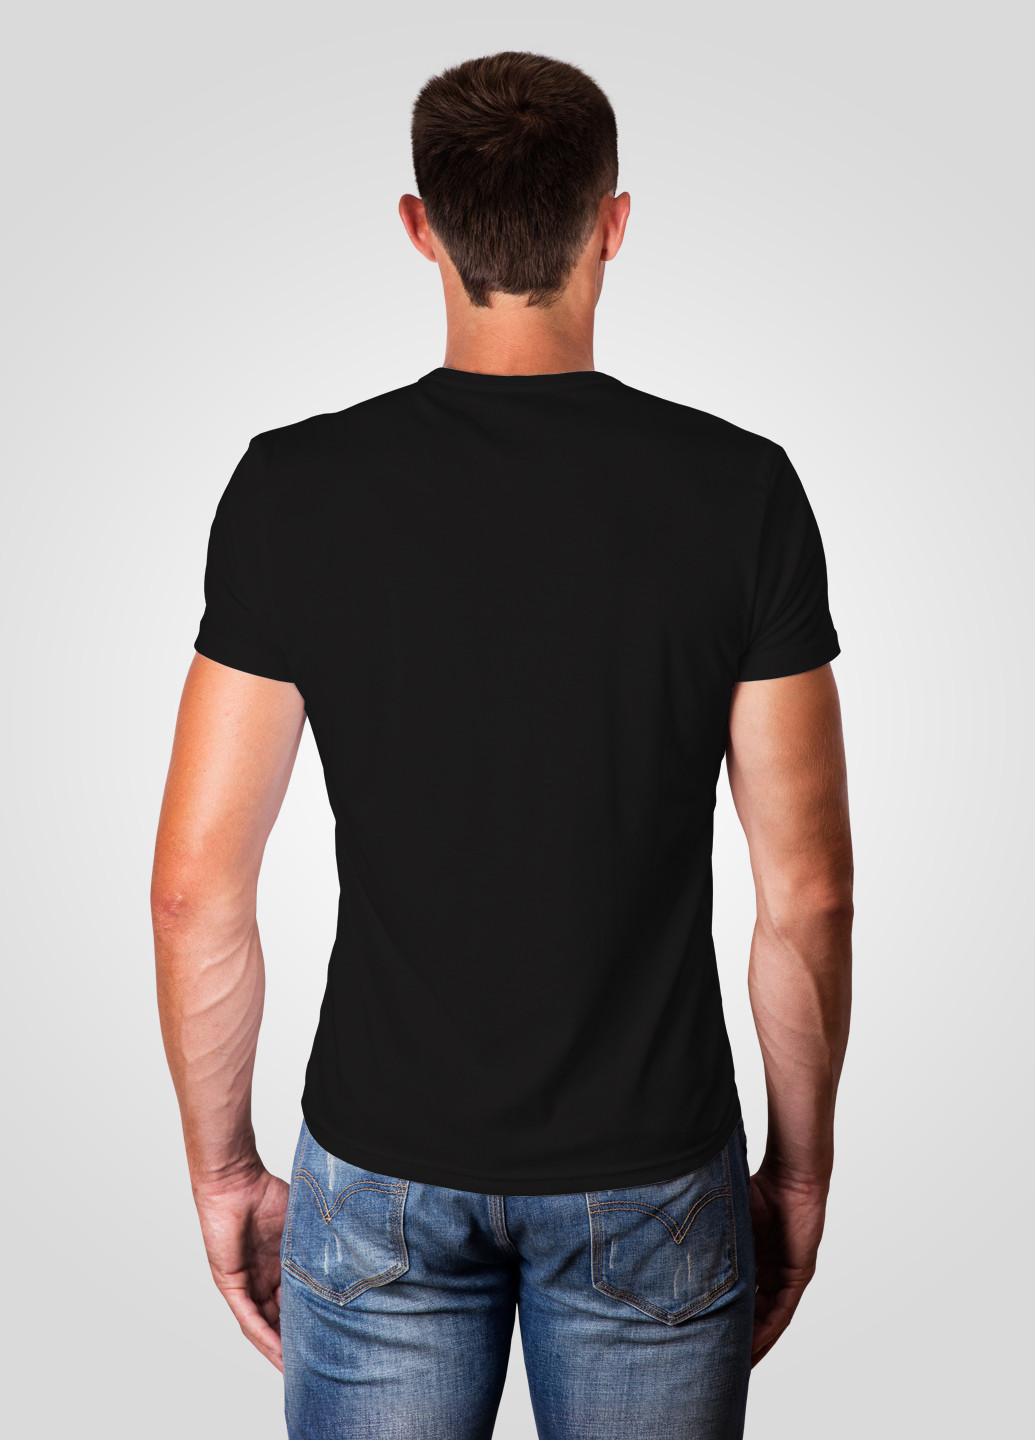 Черная футболка мужская 19м319-17 синяя(електро) с коротким рукавом Malta